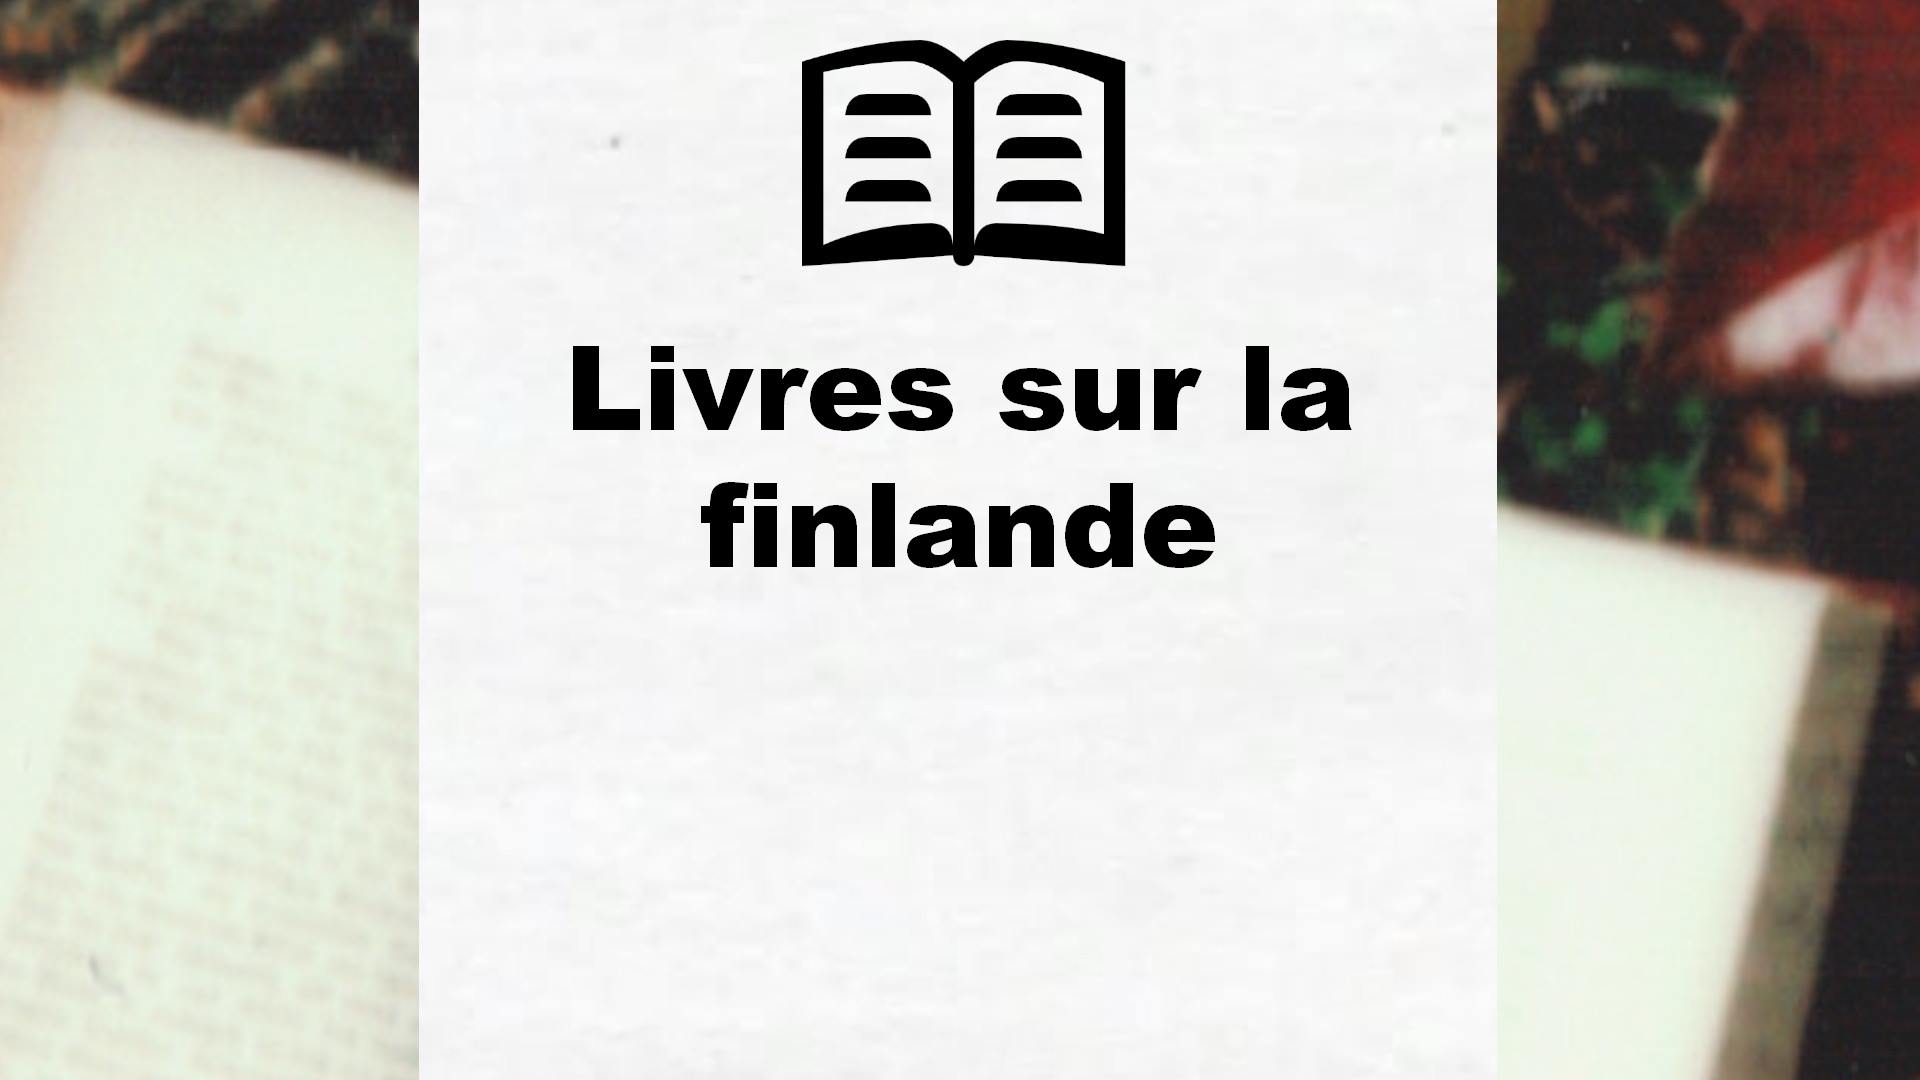 Livres sur la finlande